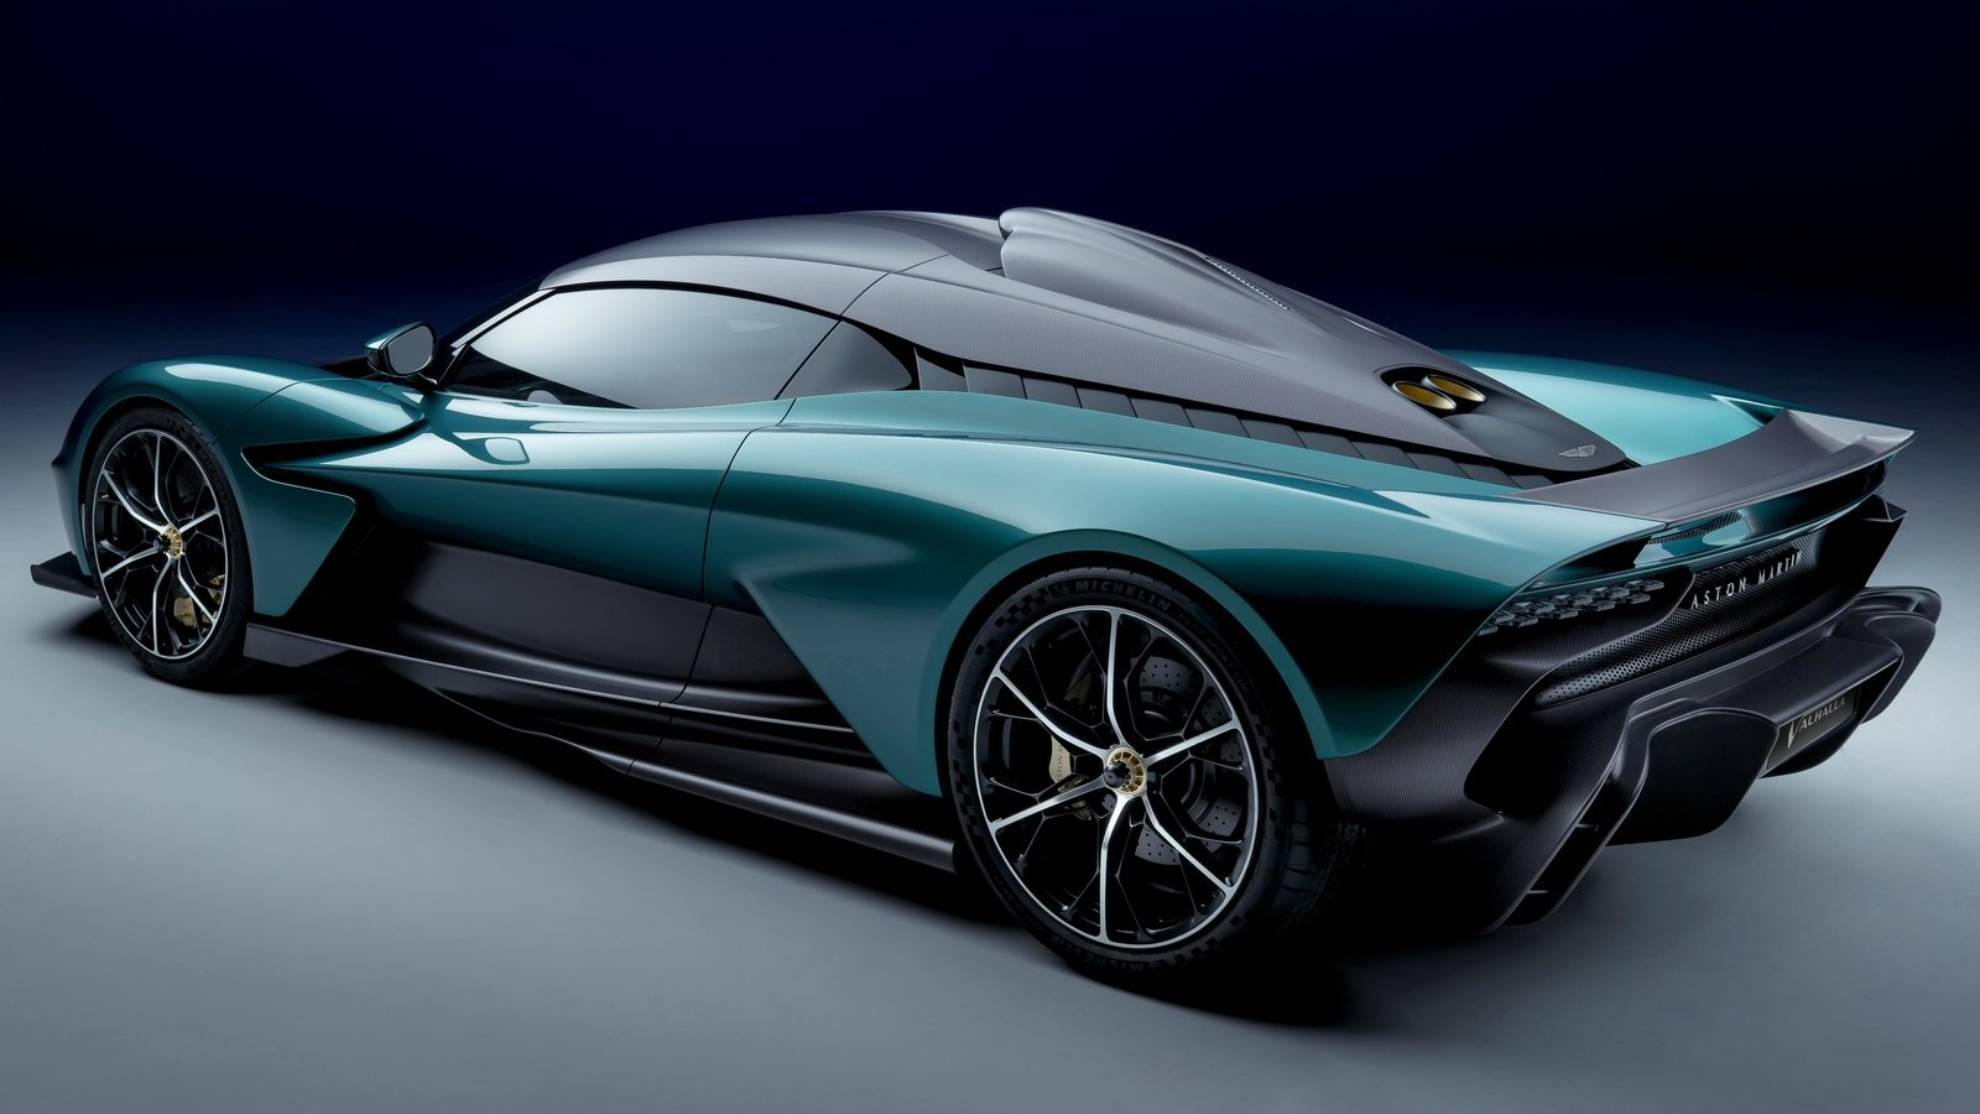 El Valhalla estrenará la tecnología híbrida enchufable en Aston Martin.